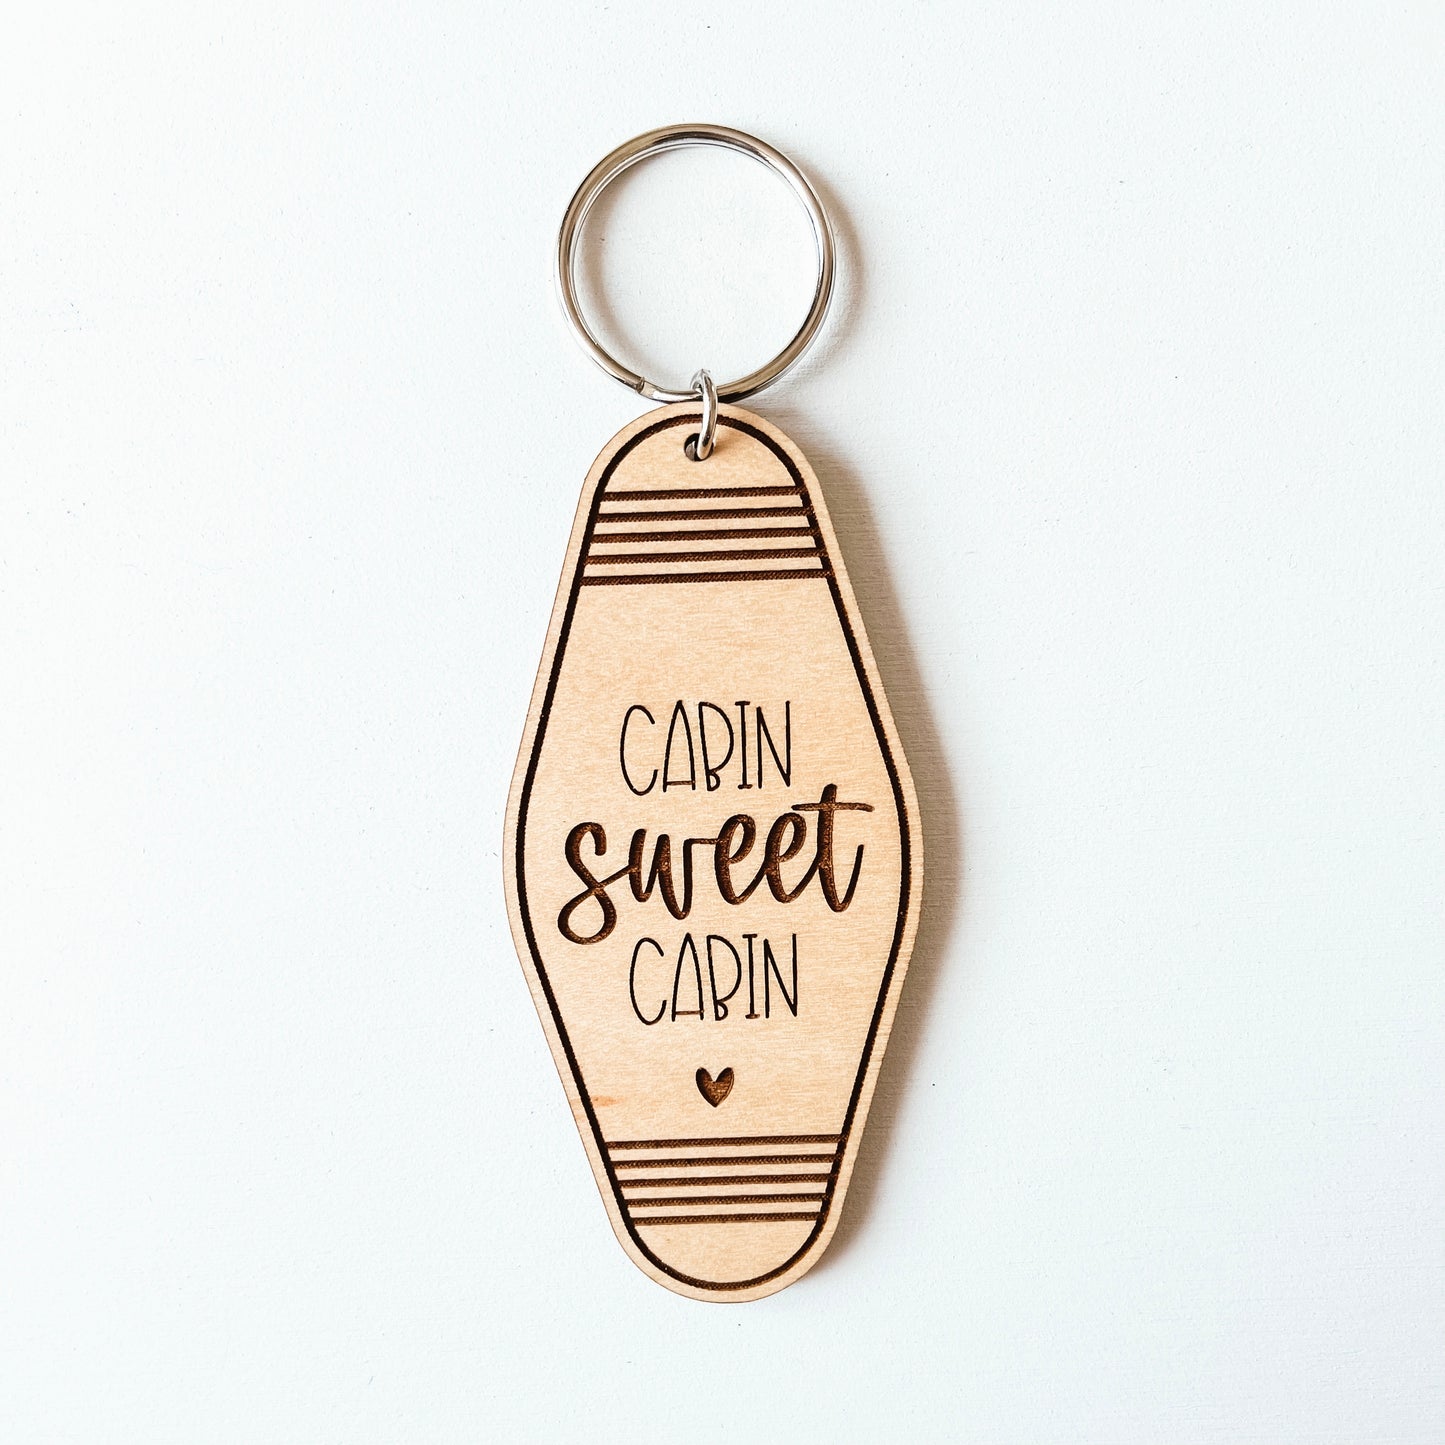 Cabin Sweet Cabin Keychain